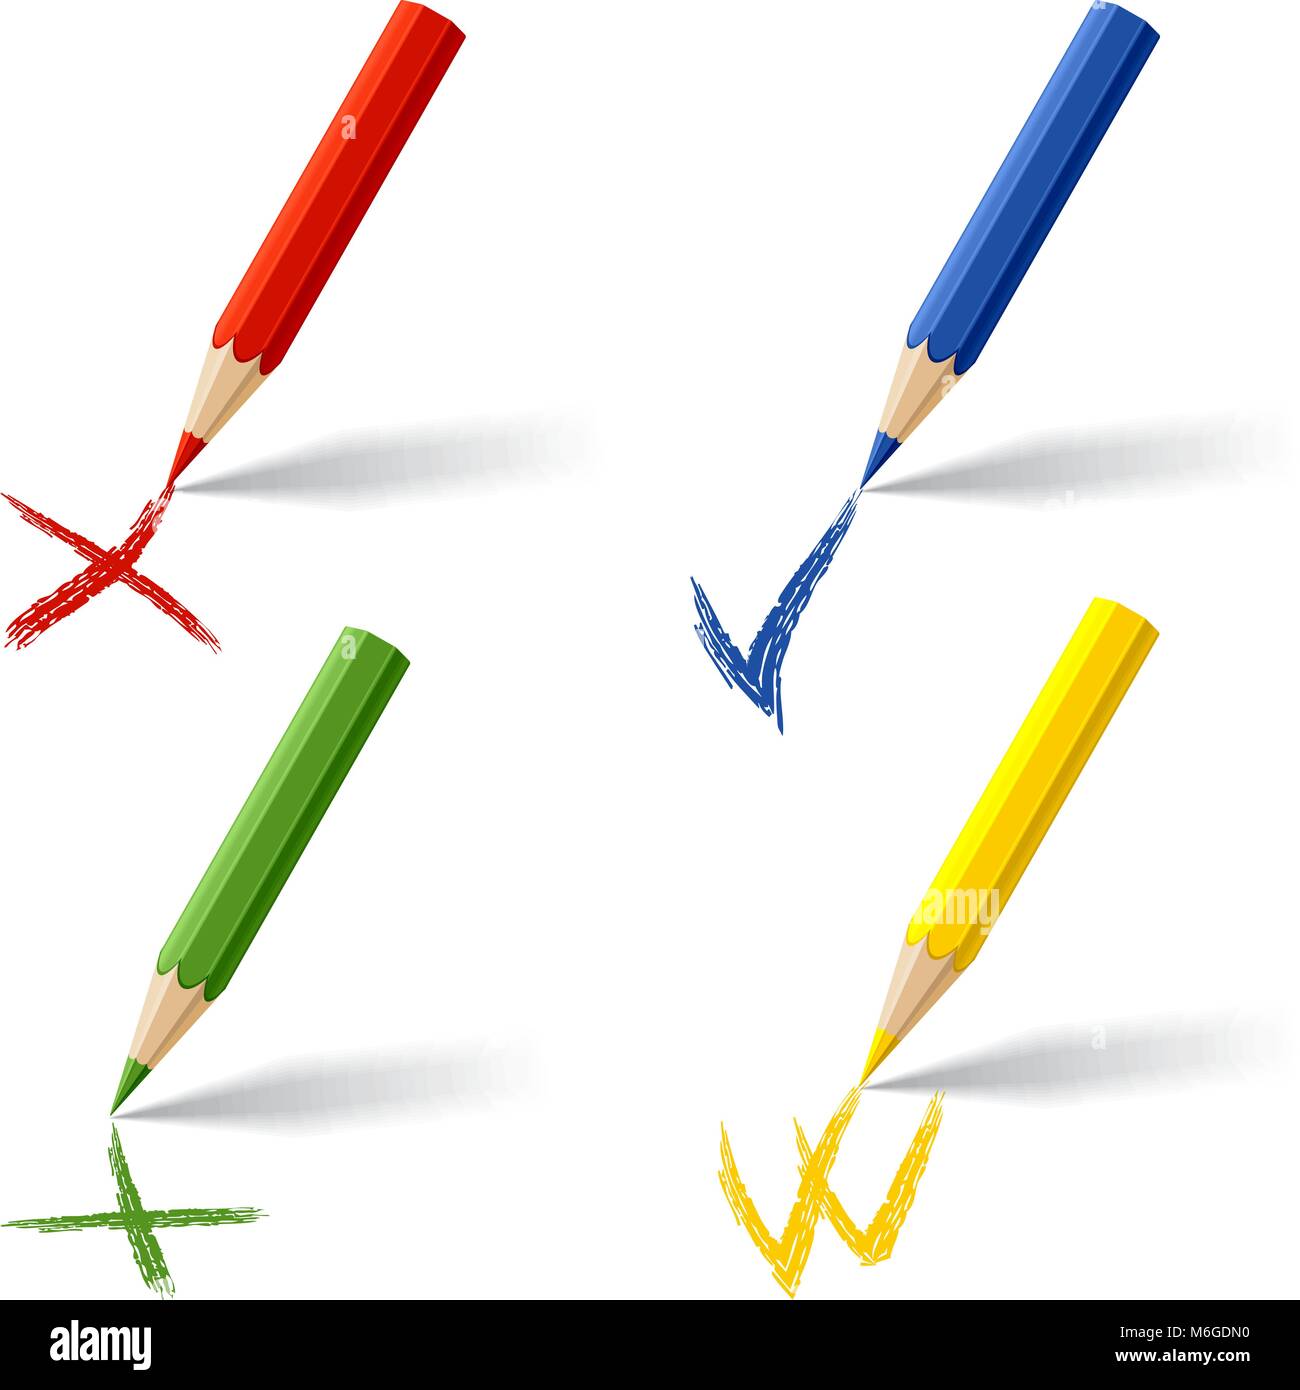 Collection de crayons de couleur sur fond blanc Illustration de Vecteur